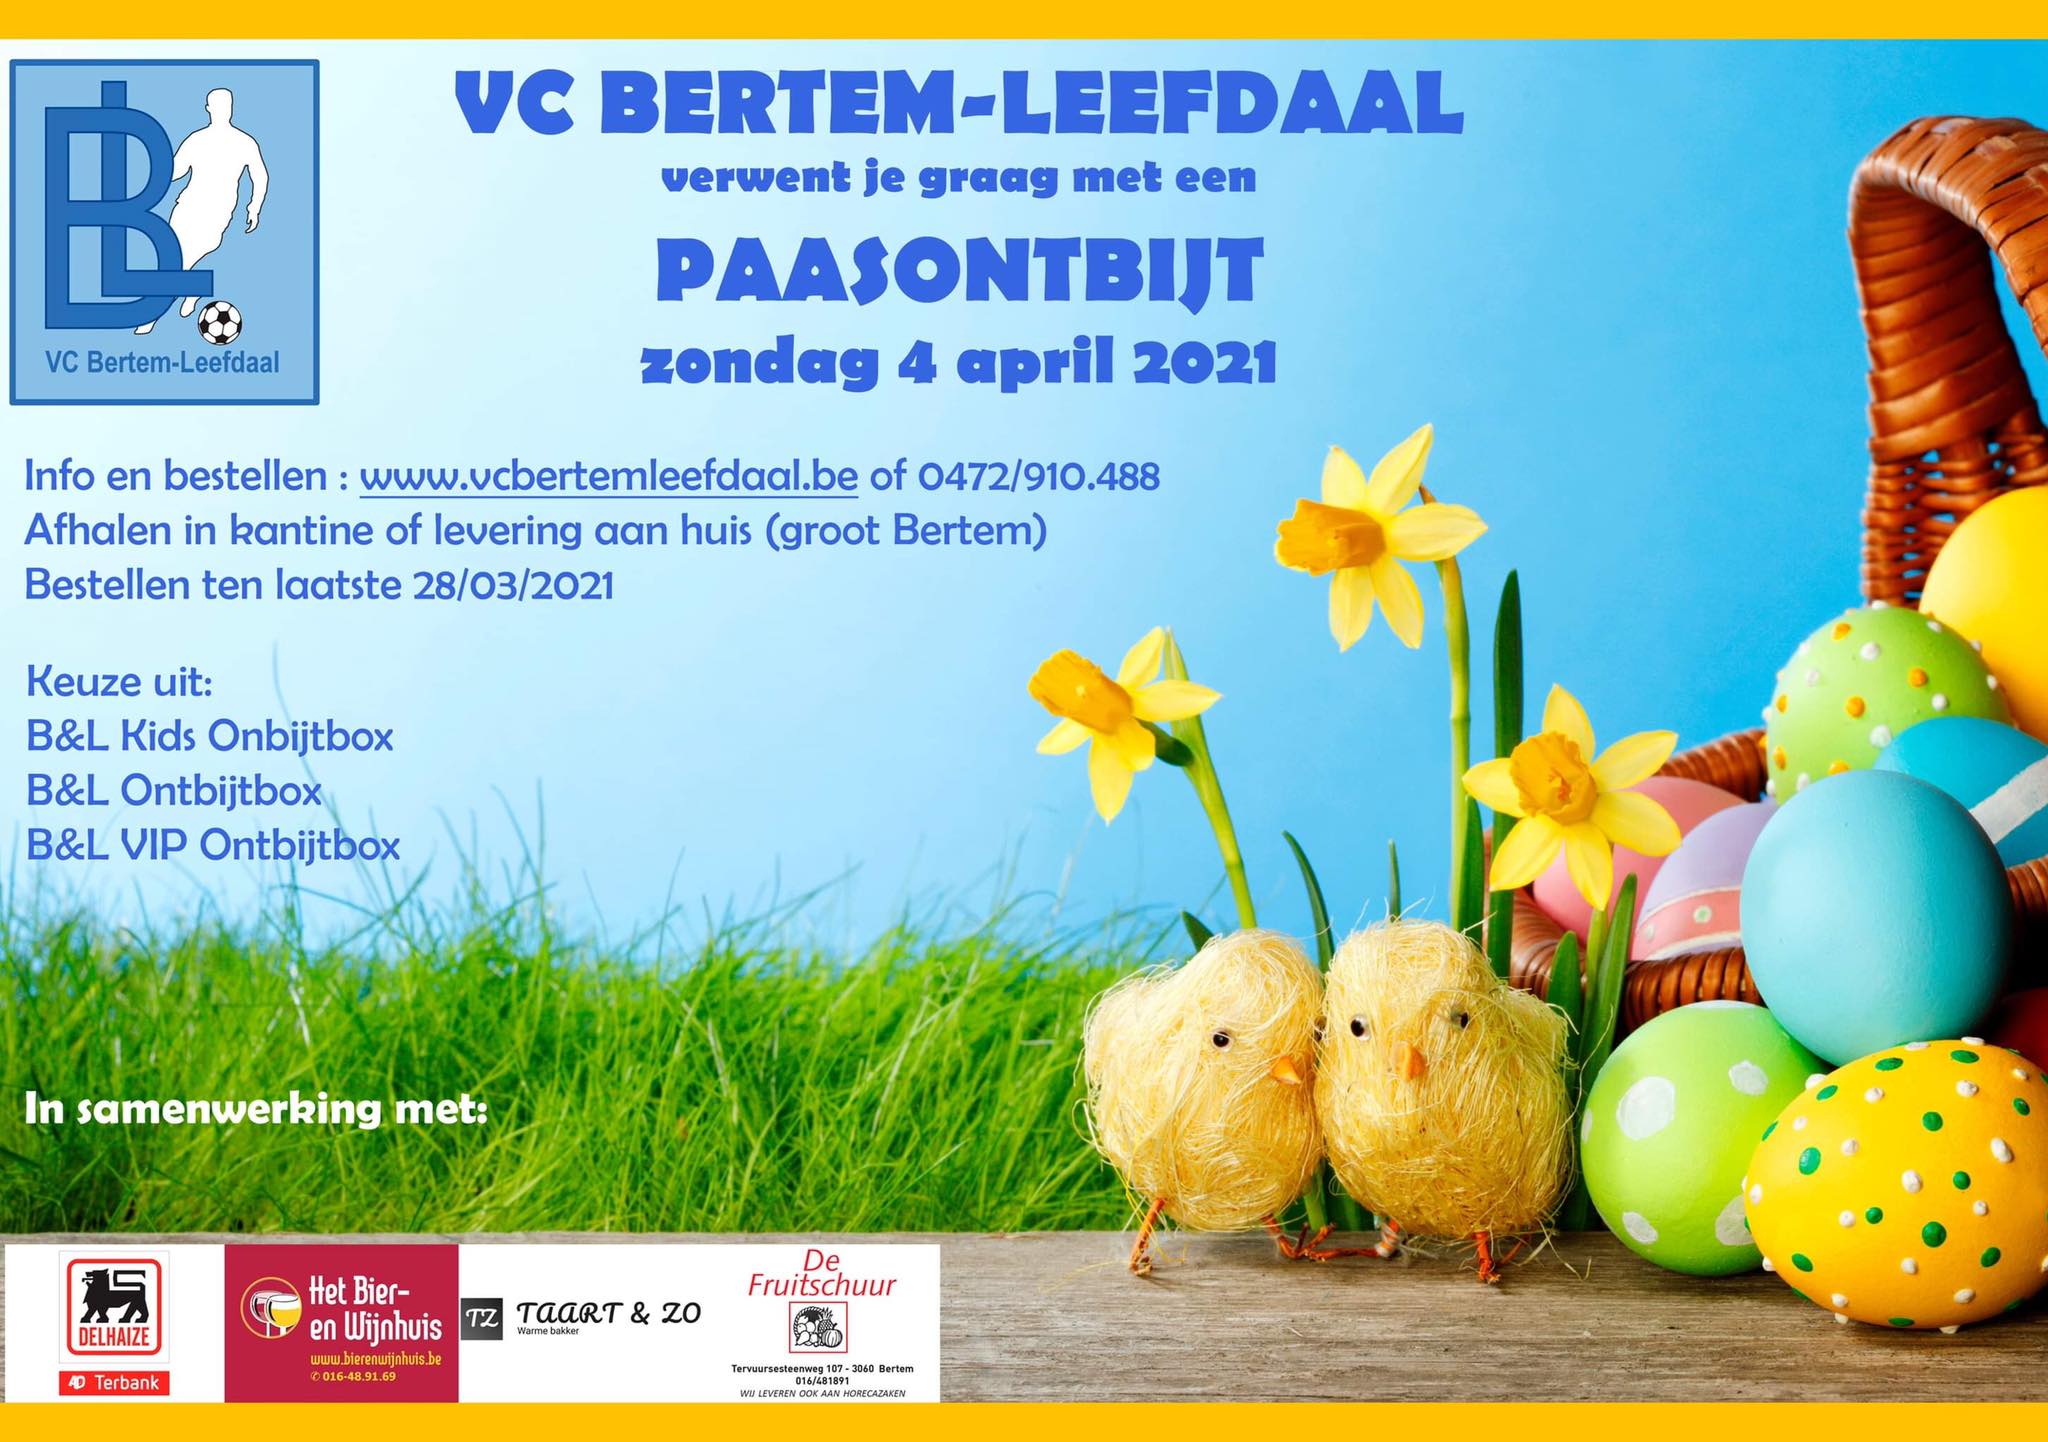 Maak van Paaszondag een voltreffer met een VC Bertem-Leefdaal Ontbijtbox!